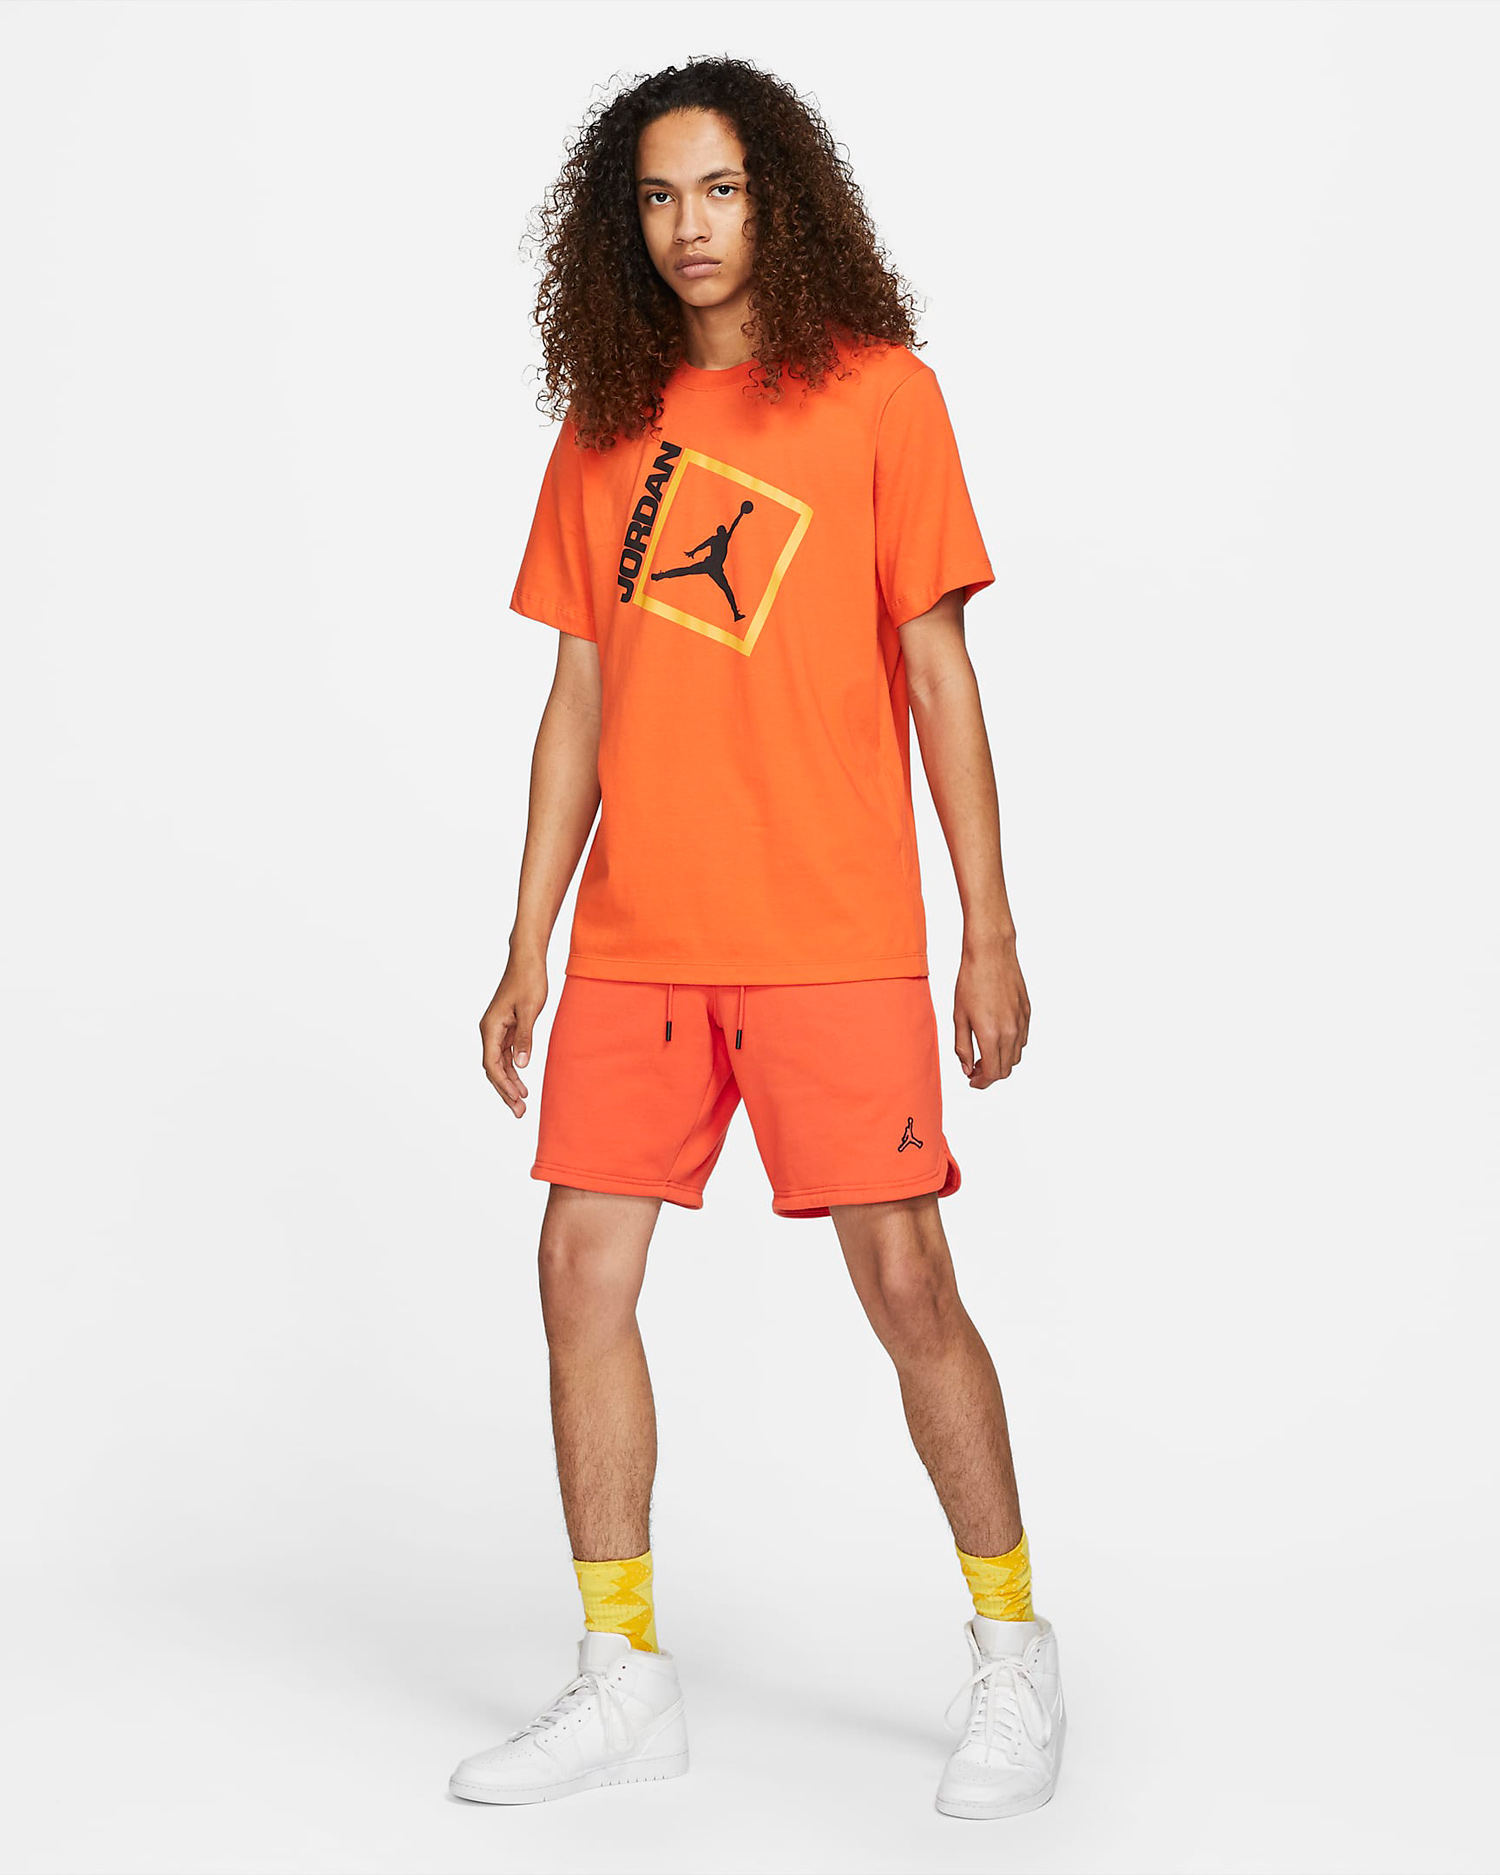 jordan-electro-orange-shirt-shorts-outfit